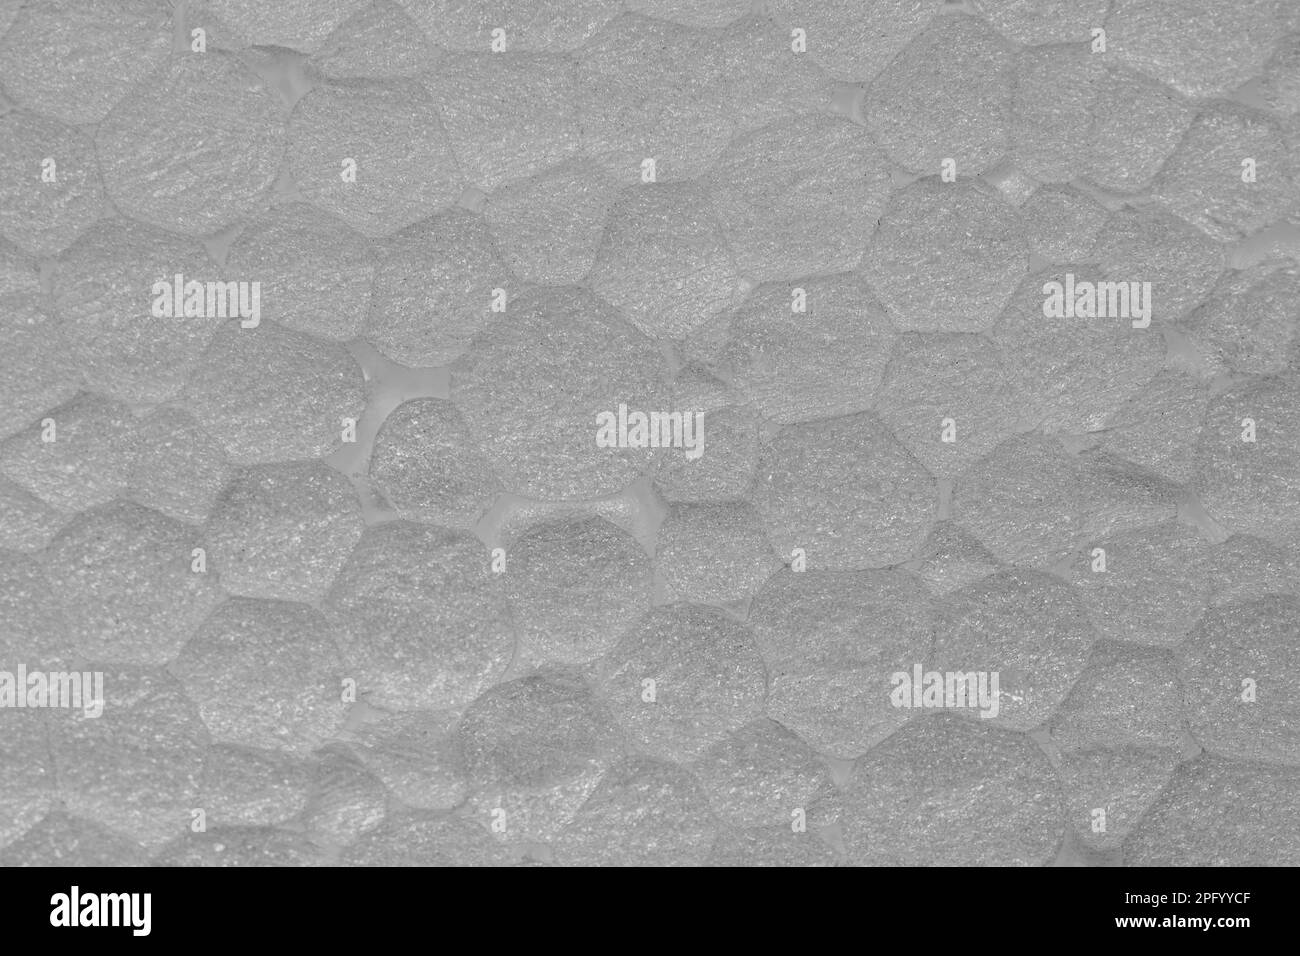 texture et surface typiques de la feuille de mousse de polystyrène expansée exp eps Banque D'Images